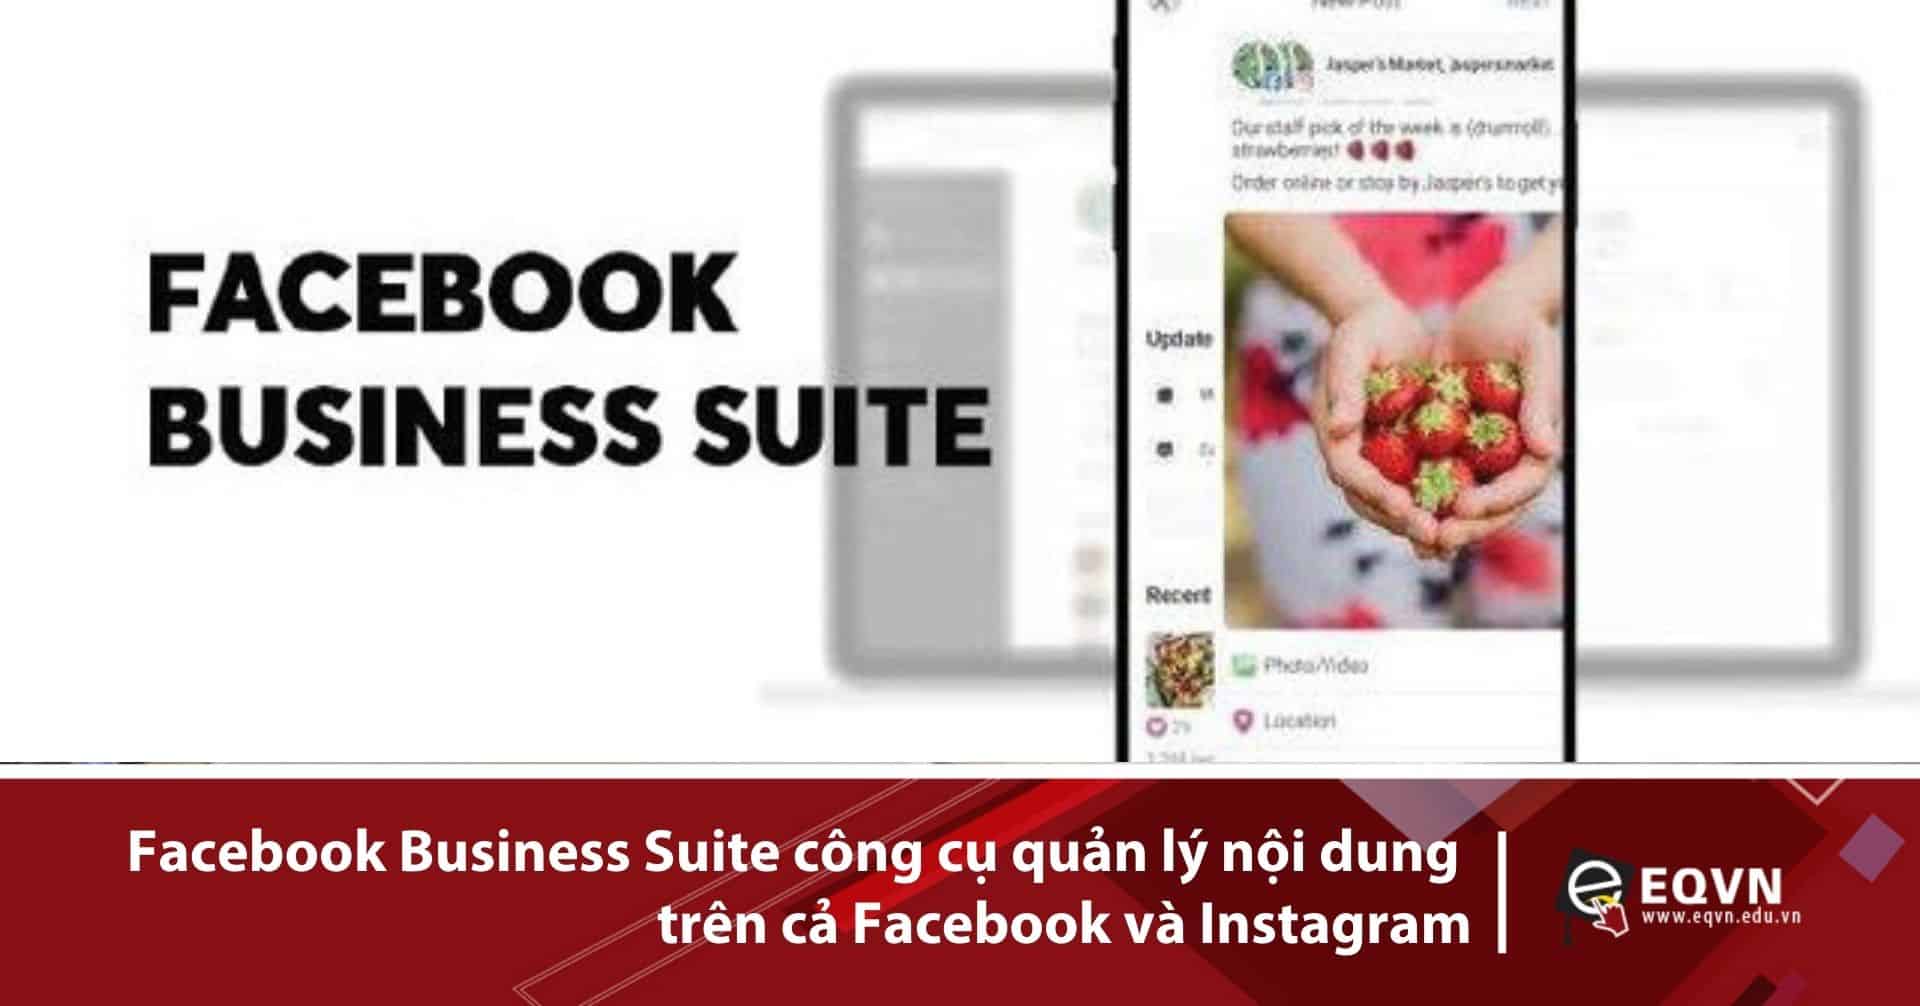 Facebook Business Suite công cụ quản lý nội dung trên cả Facebook và Instagram